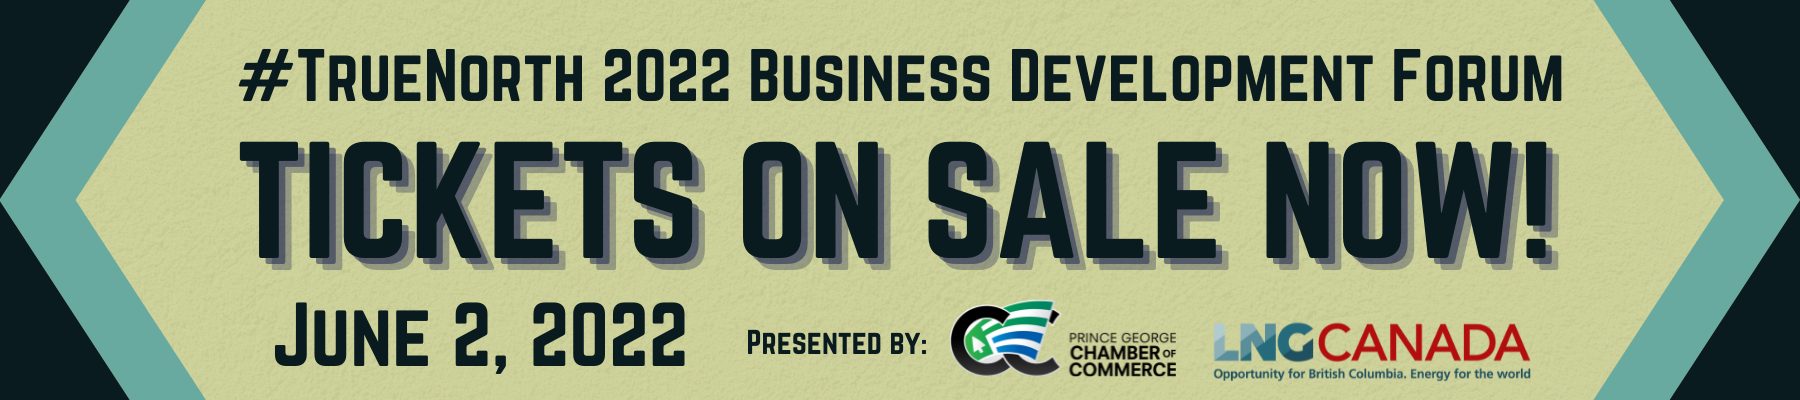 #TrueNorth 2022 Business Development Forum Website Ad Banner